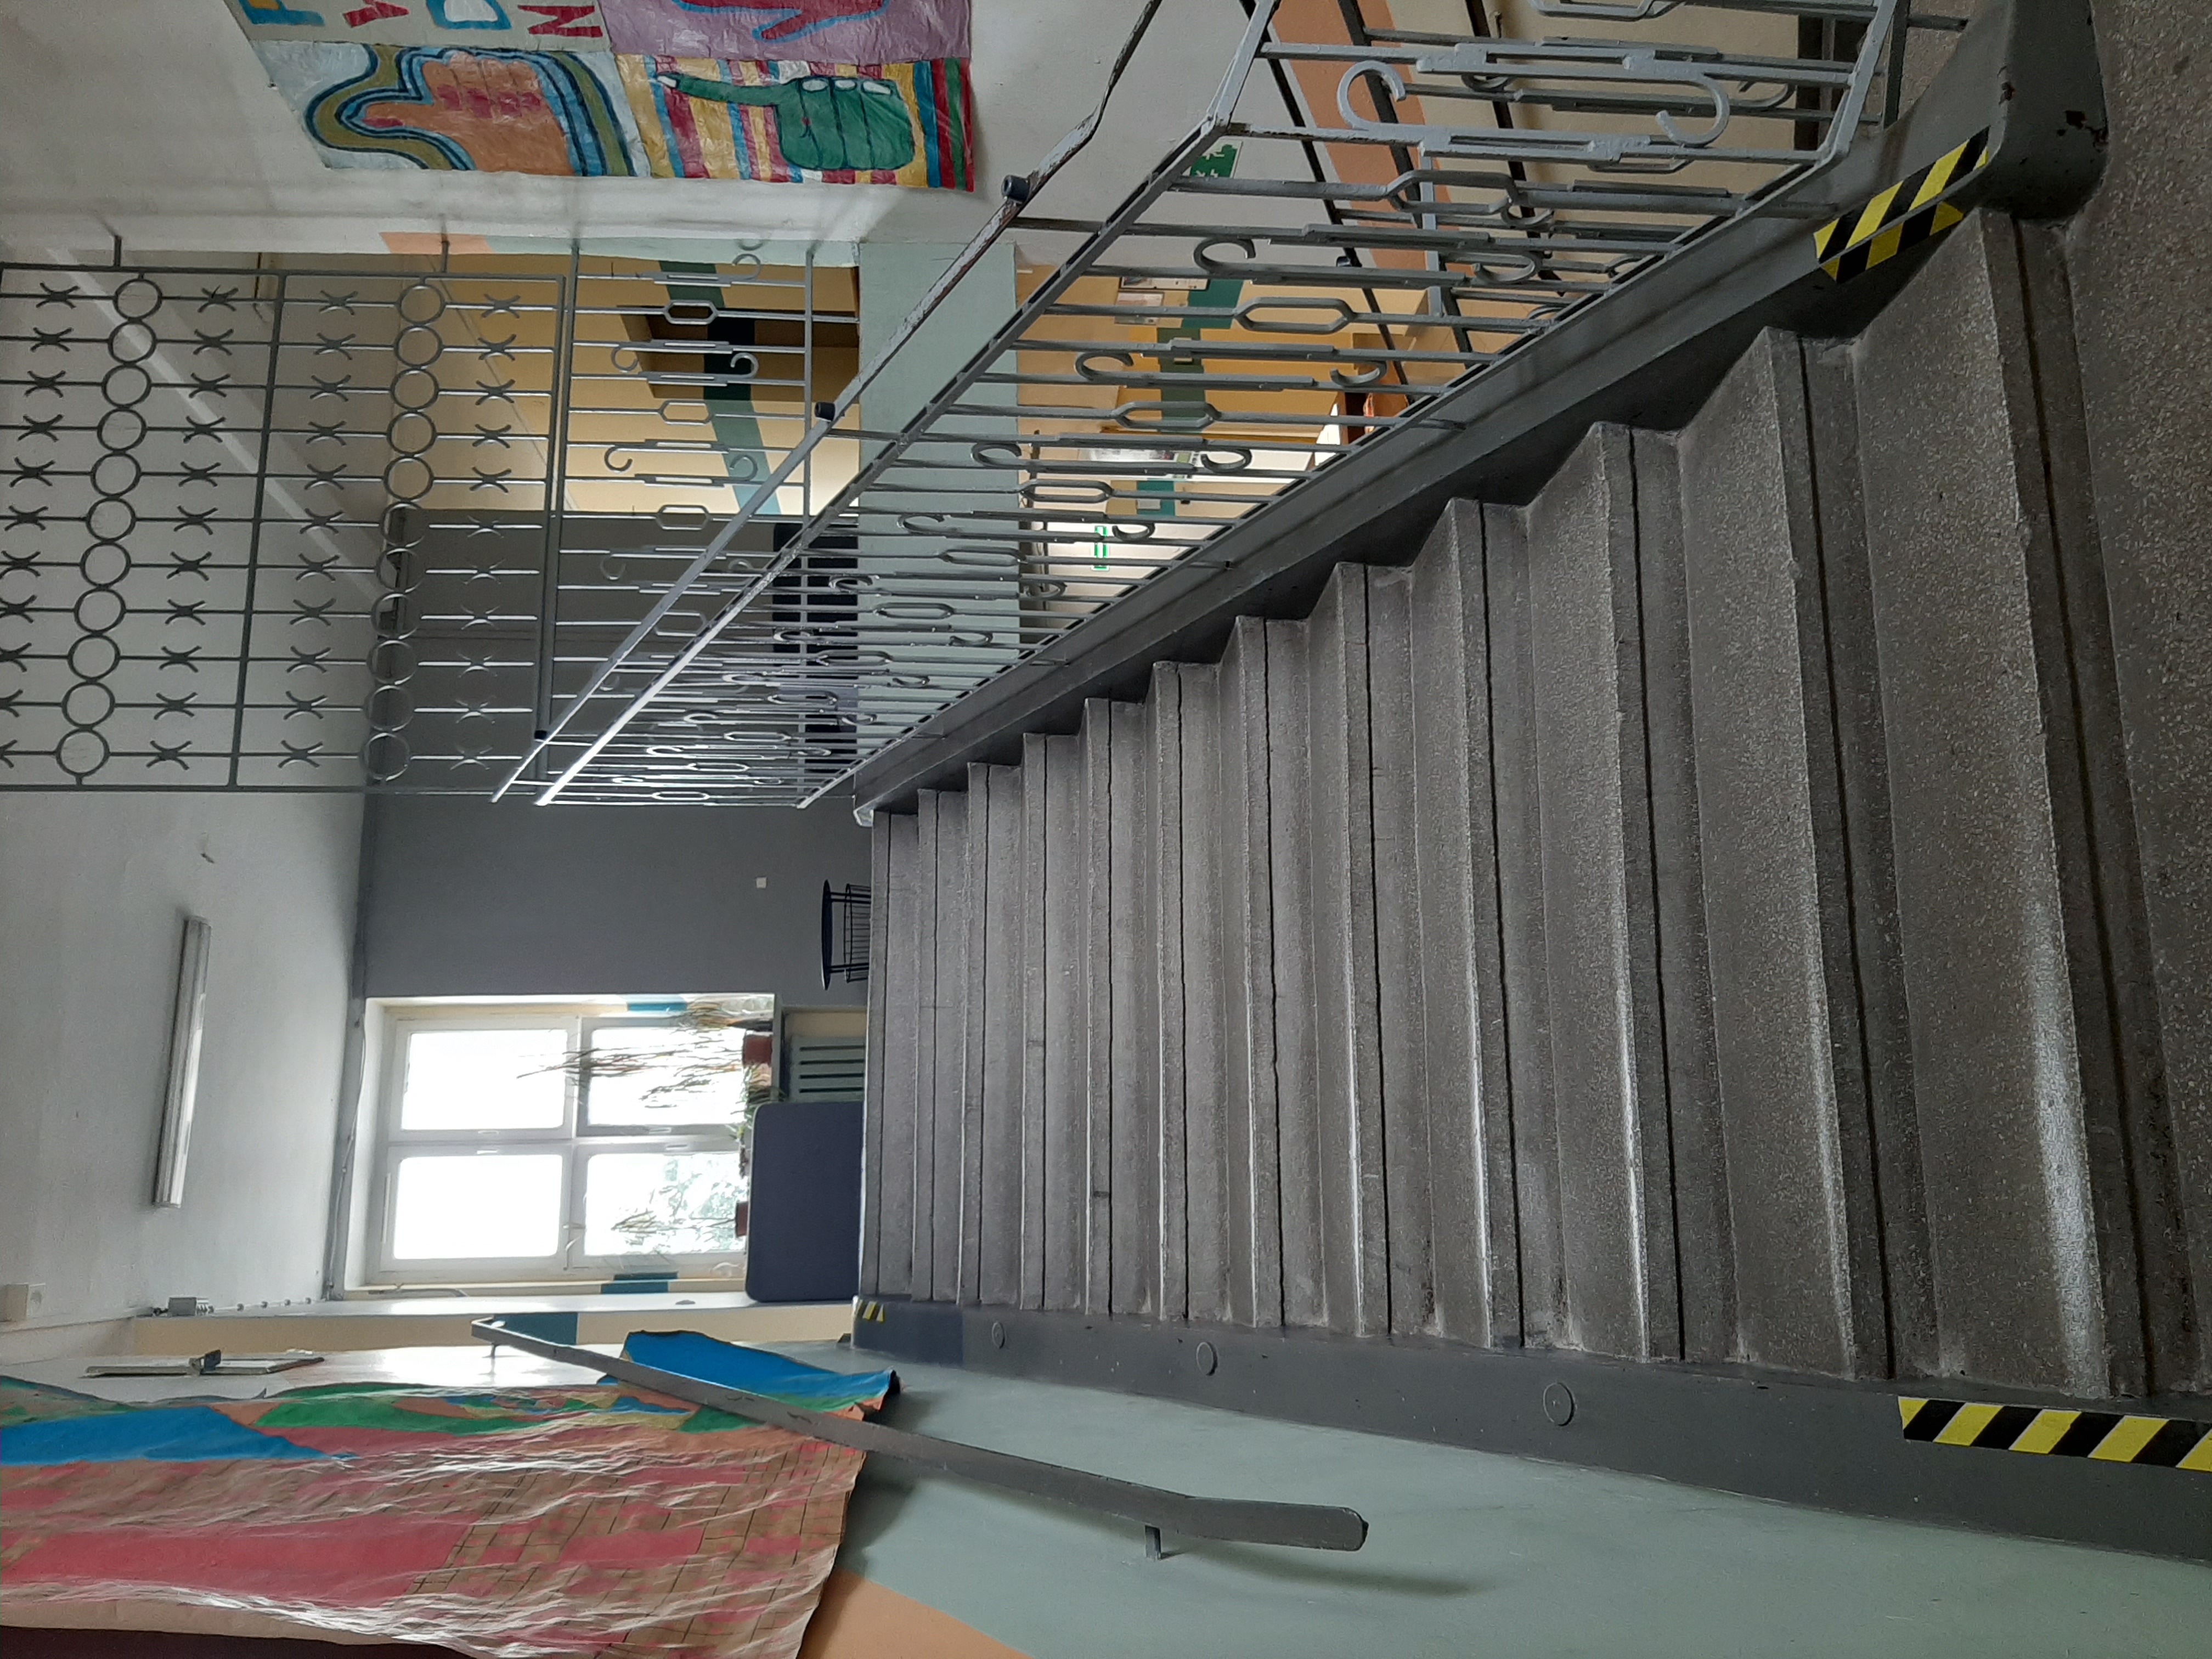 Zdjęcie prezentuje przykładową klatkę schodową prowadzącą na piętro szkoły.